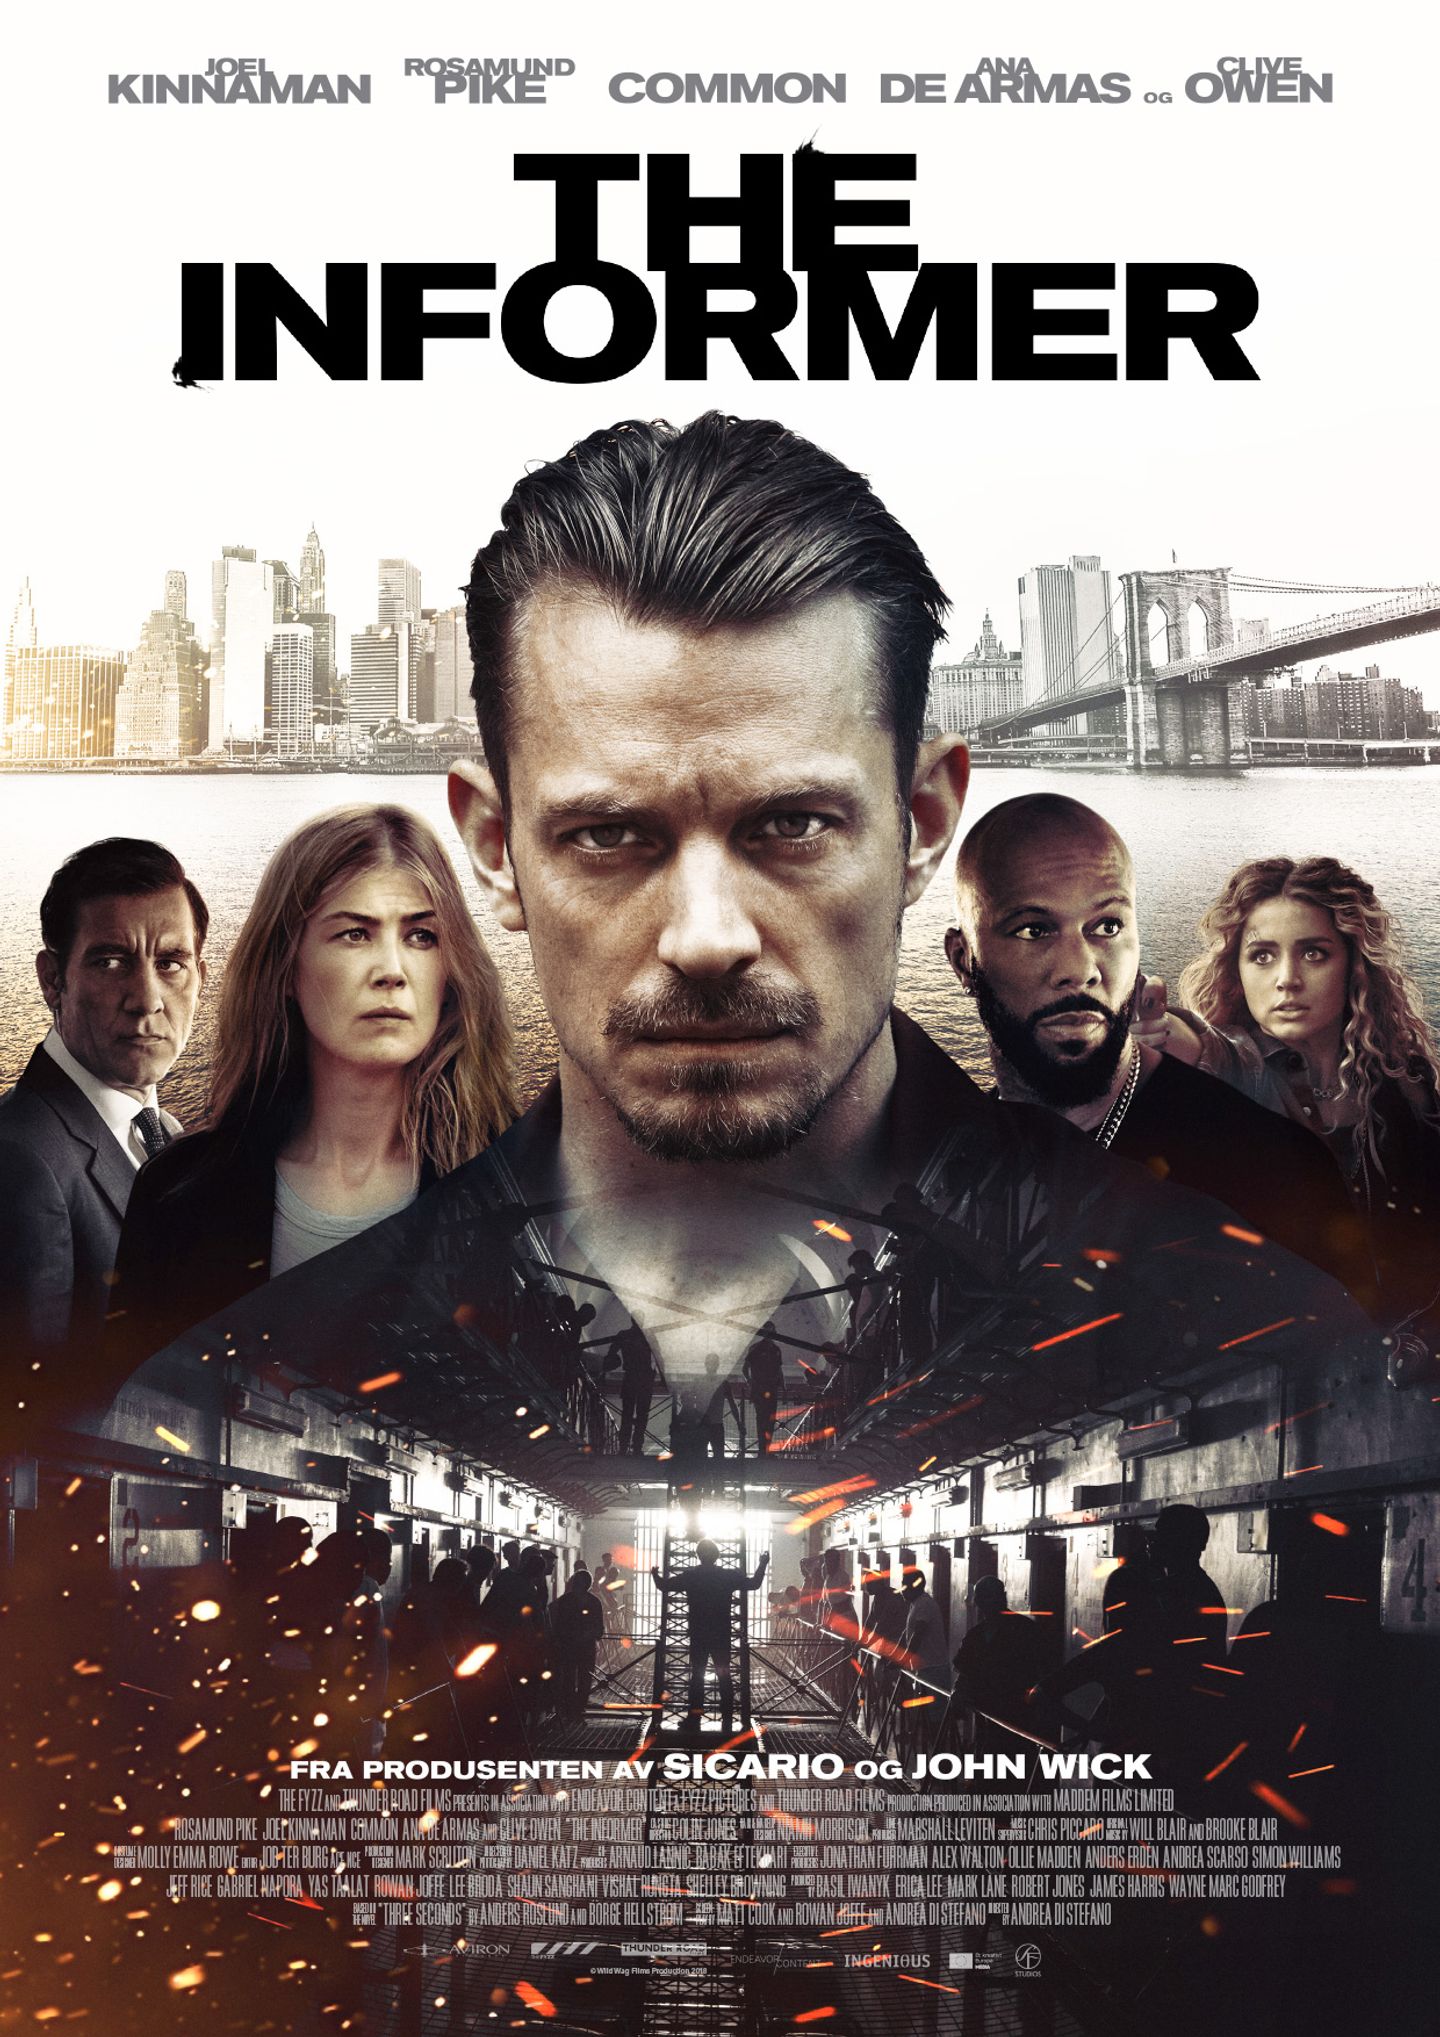 Plakat for 'The Informer'